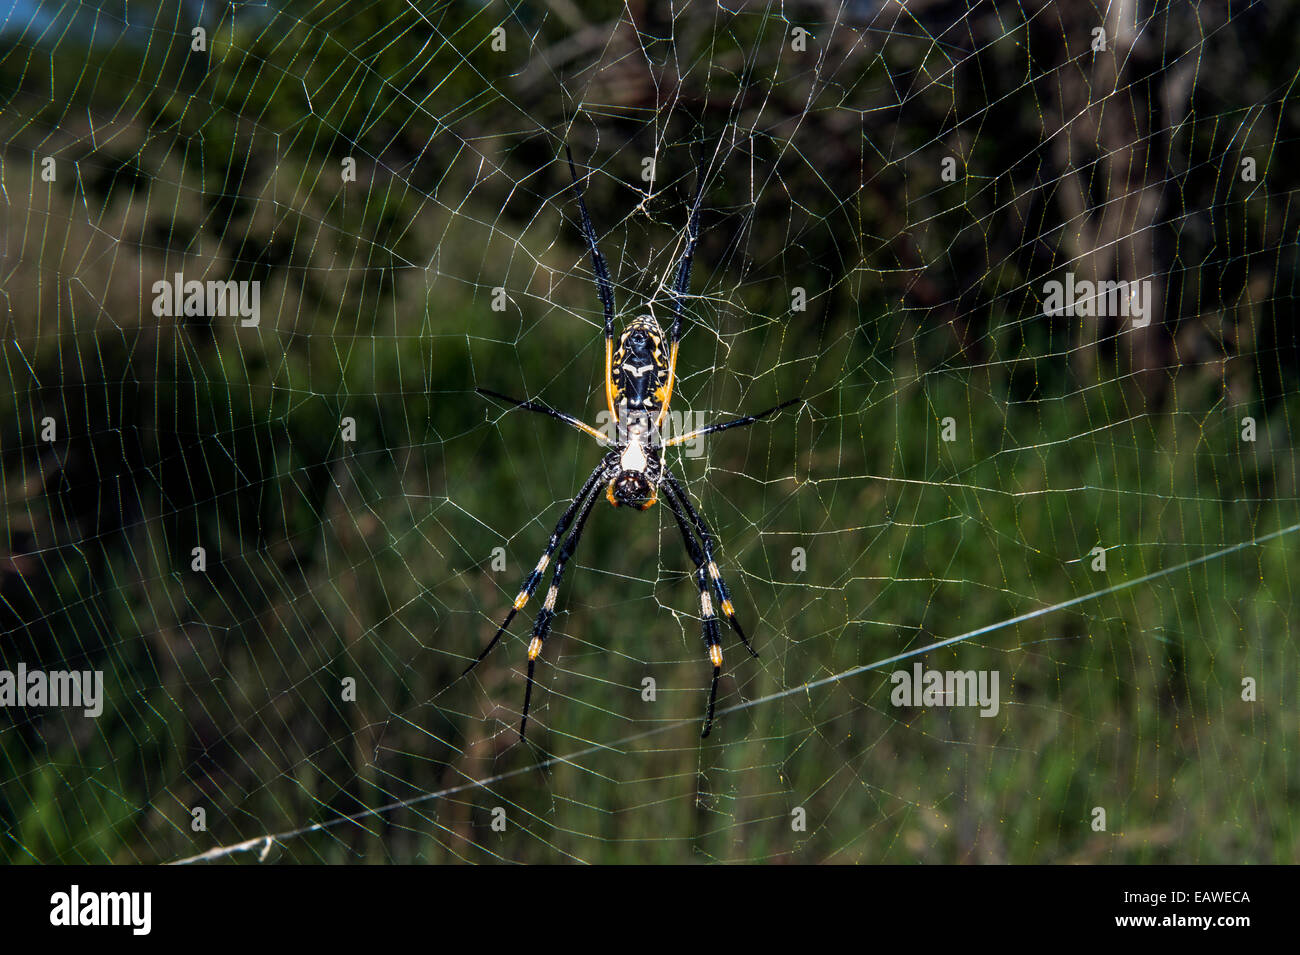 Una femmina di Orb spider sospeso nel suo web in attesa per la cattura delle prede. Foto Stock